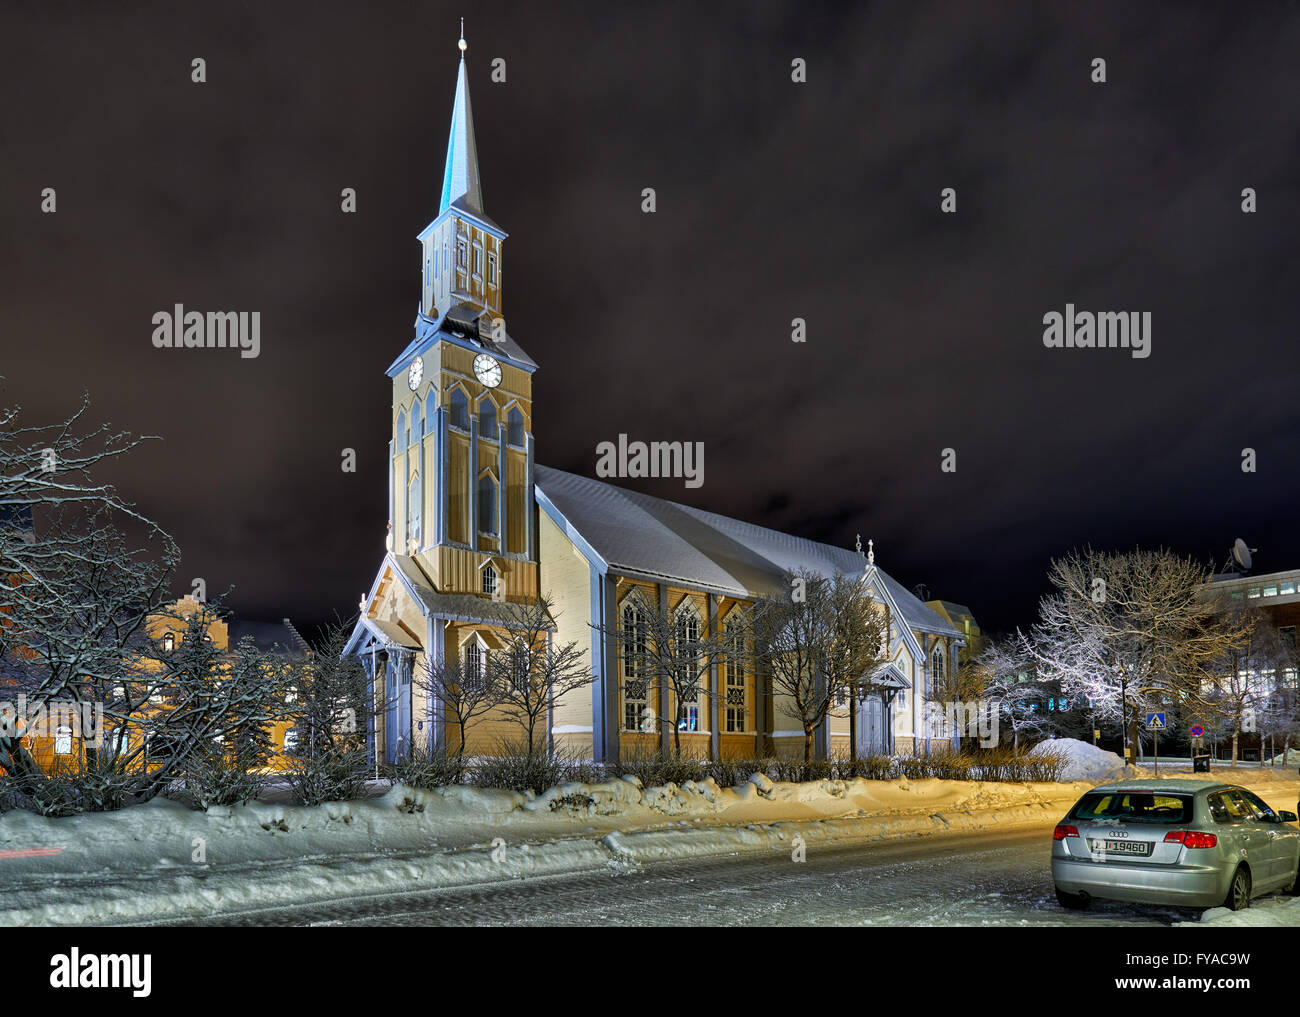 Photo de nuit de neige recouvrait Tromsoe, bâtiments en bois typique de la cathédrale de Tromsø, photo de nuit avec de la neige, Troms, Norvège, Europe Banque D'Images